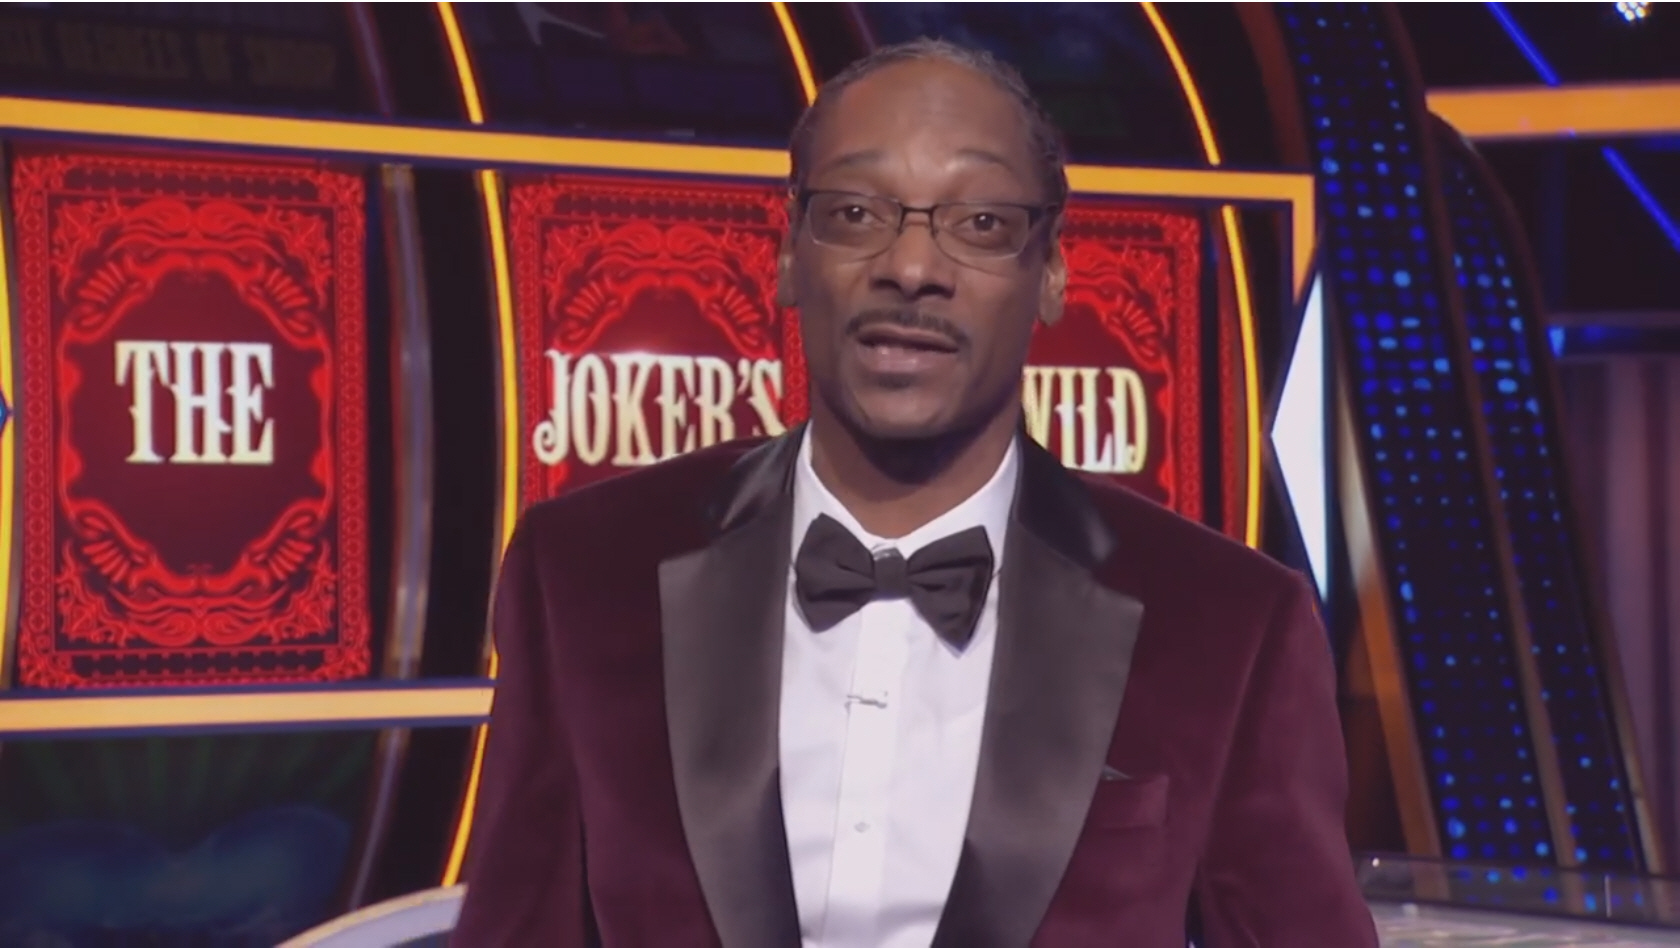 Snoop Dogg "Joker's Wild"